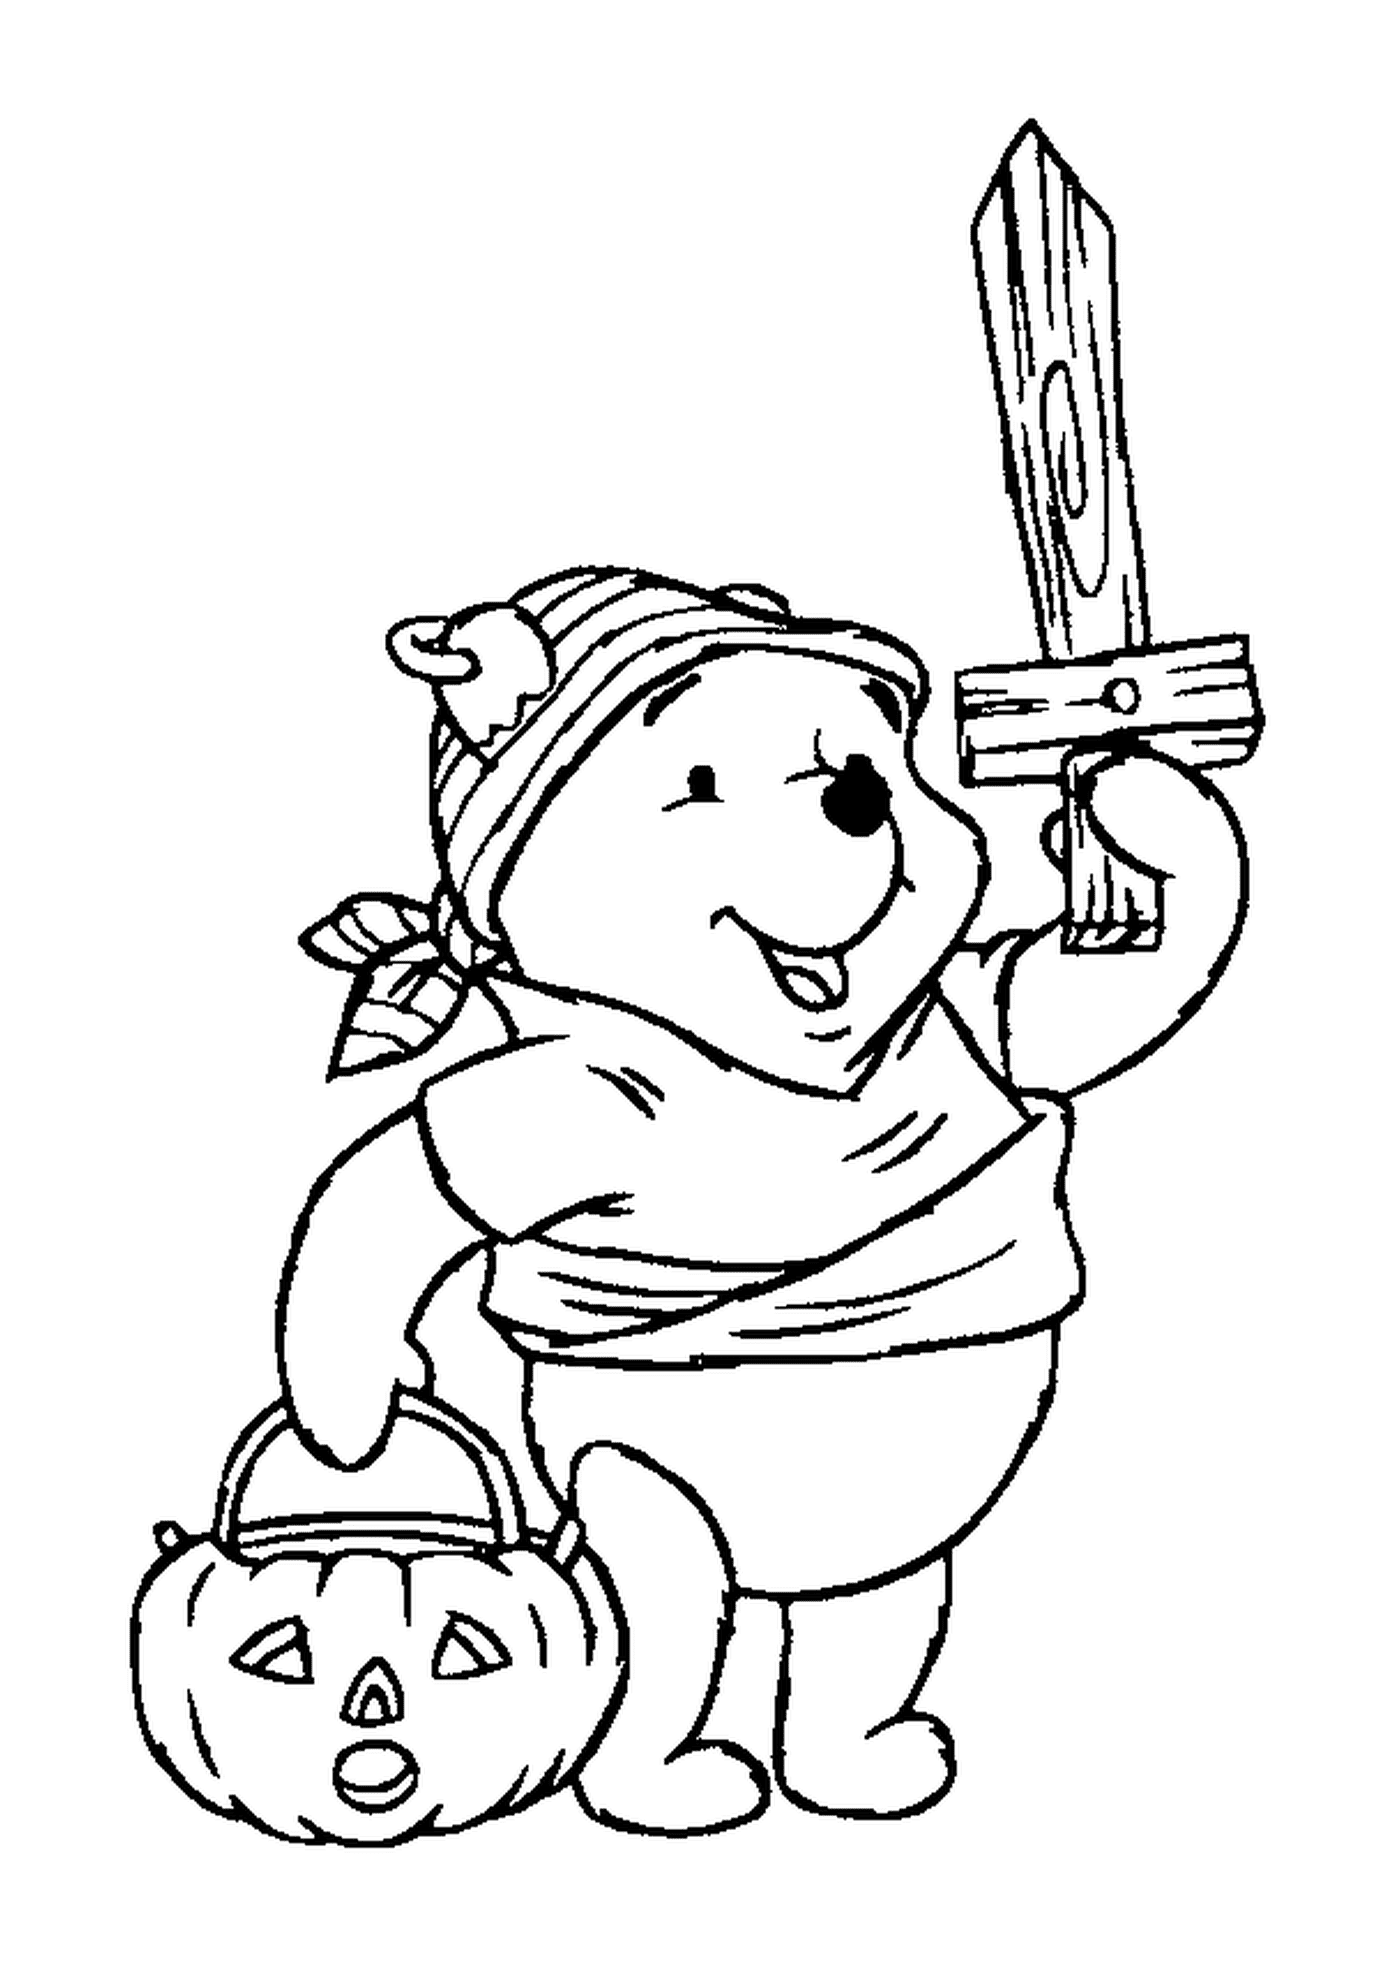  Winnie disfrazado de pirata con una bolsa de calabaza 